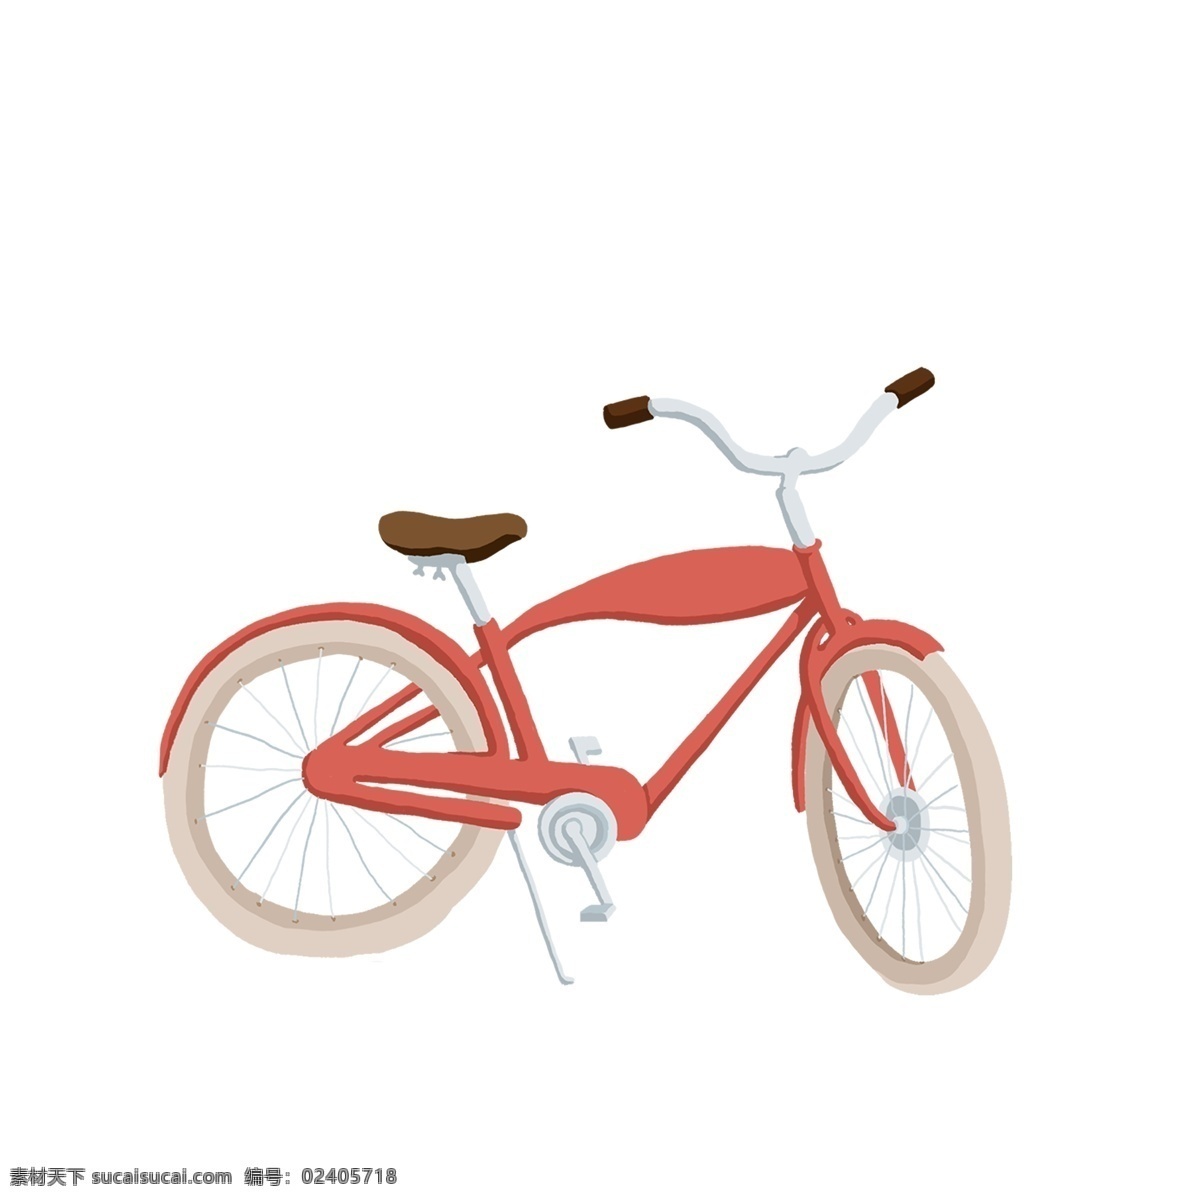 红色 小 单车 免 抠 图 交通工具 代步工具 卡通图案 卡通插画 小单车 自行车 红色的单车 免抠图